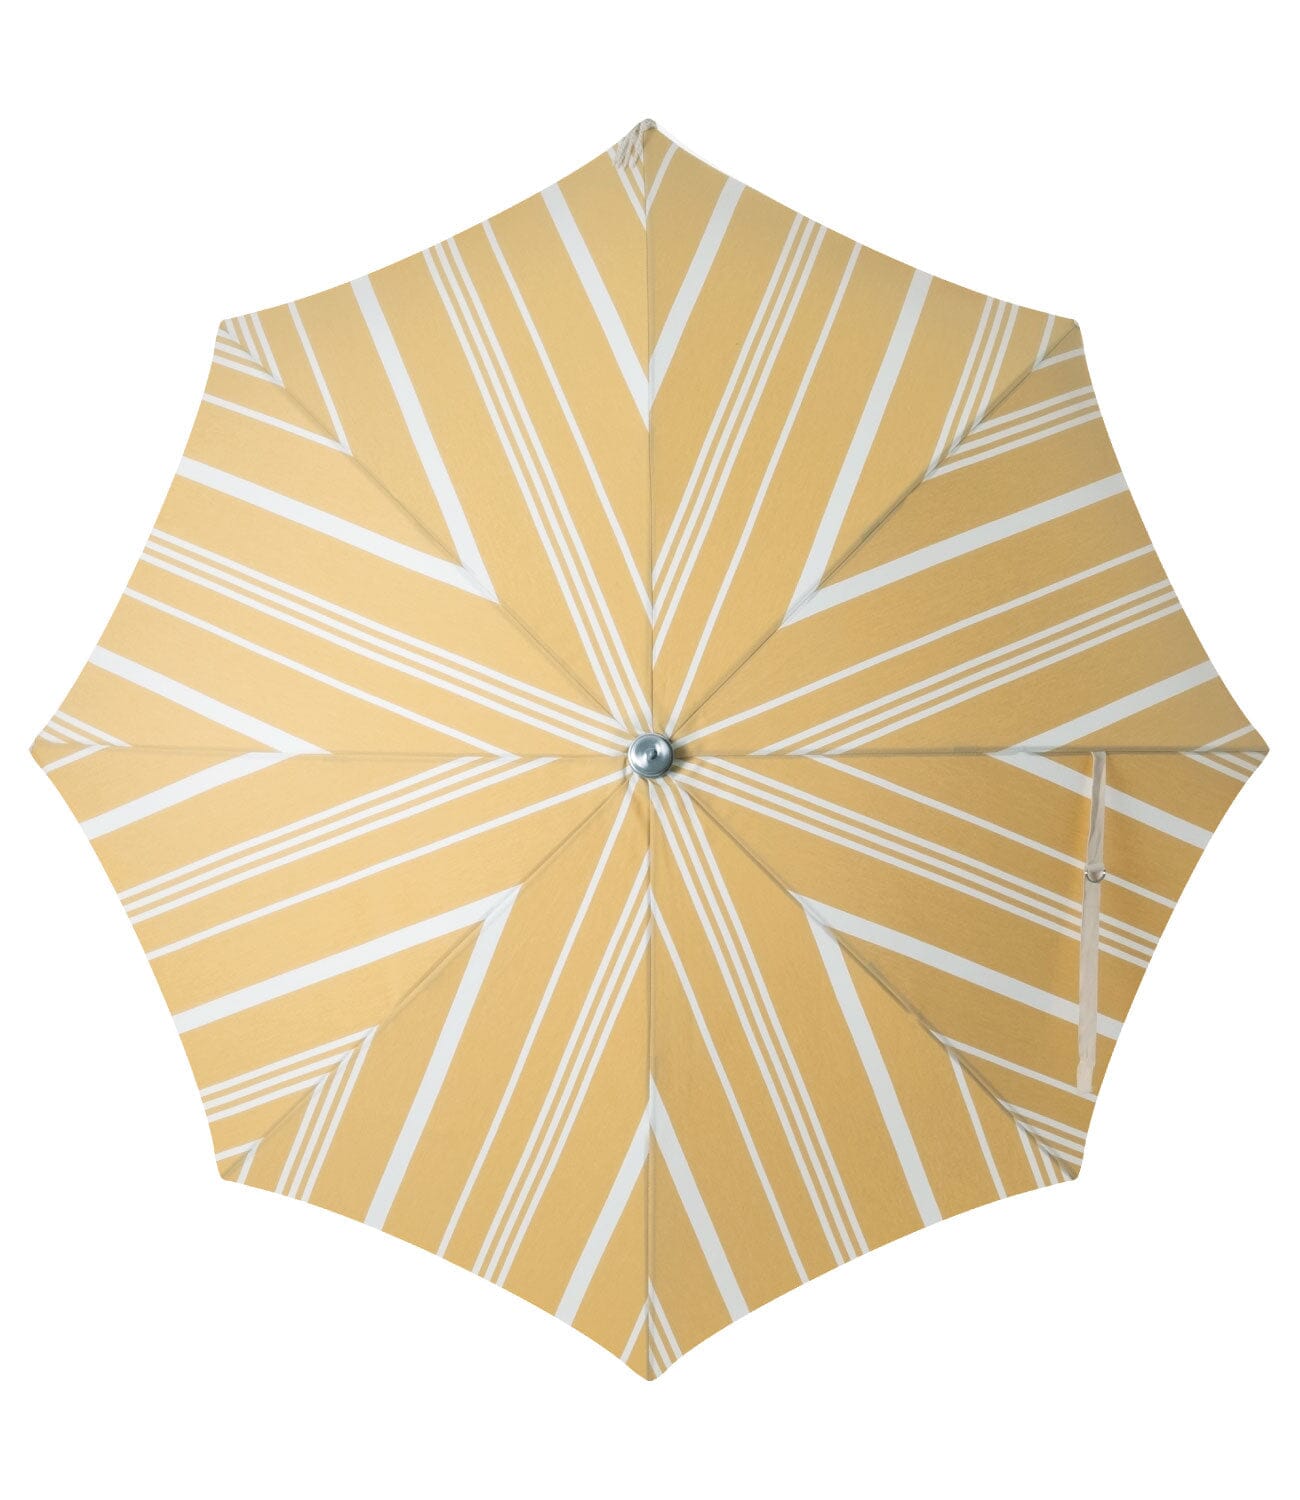 The Premium Beach Umbrella - Vintage Yellow Stripe Premium Umbrella Business & Pleasure Co 